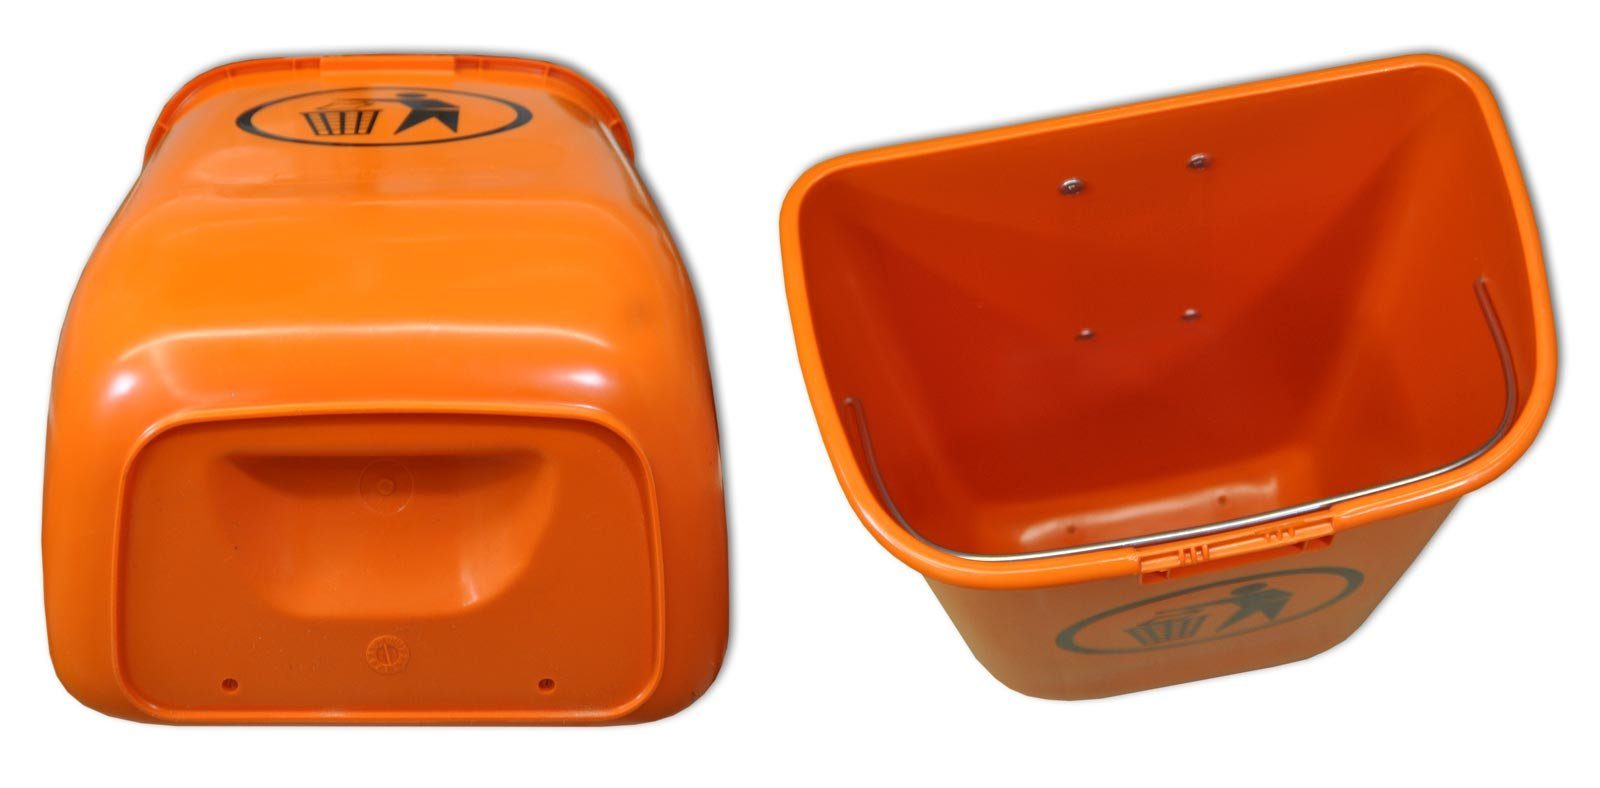 Set Regenhaube Original mit SULO orange Sulo Mülleimer Abfallbehälter Papierkorb